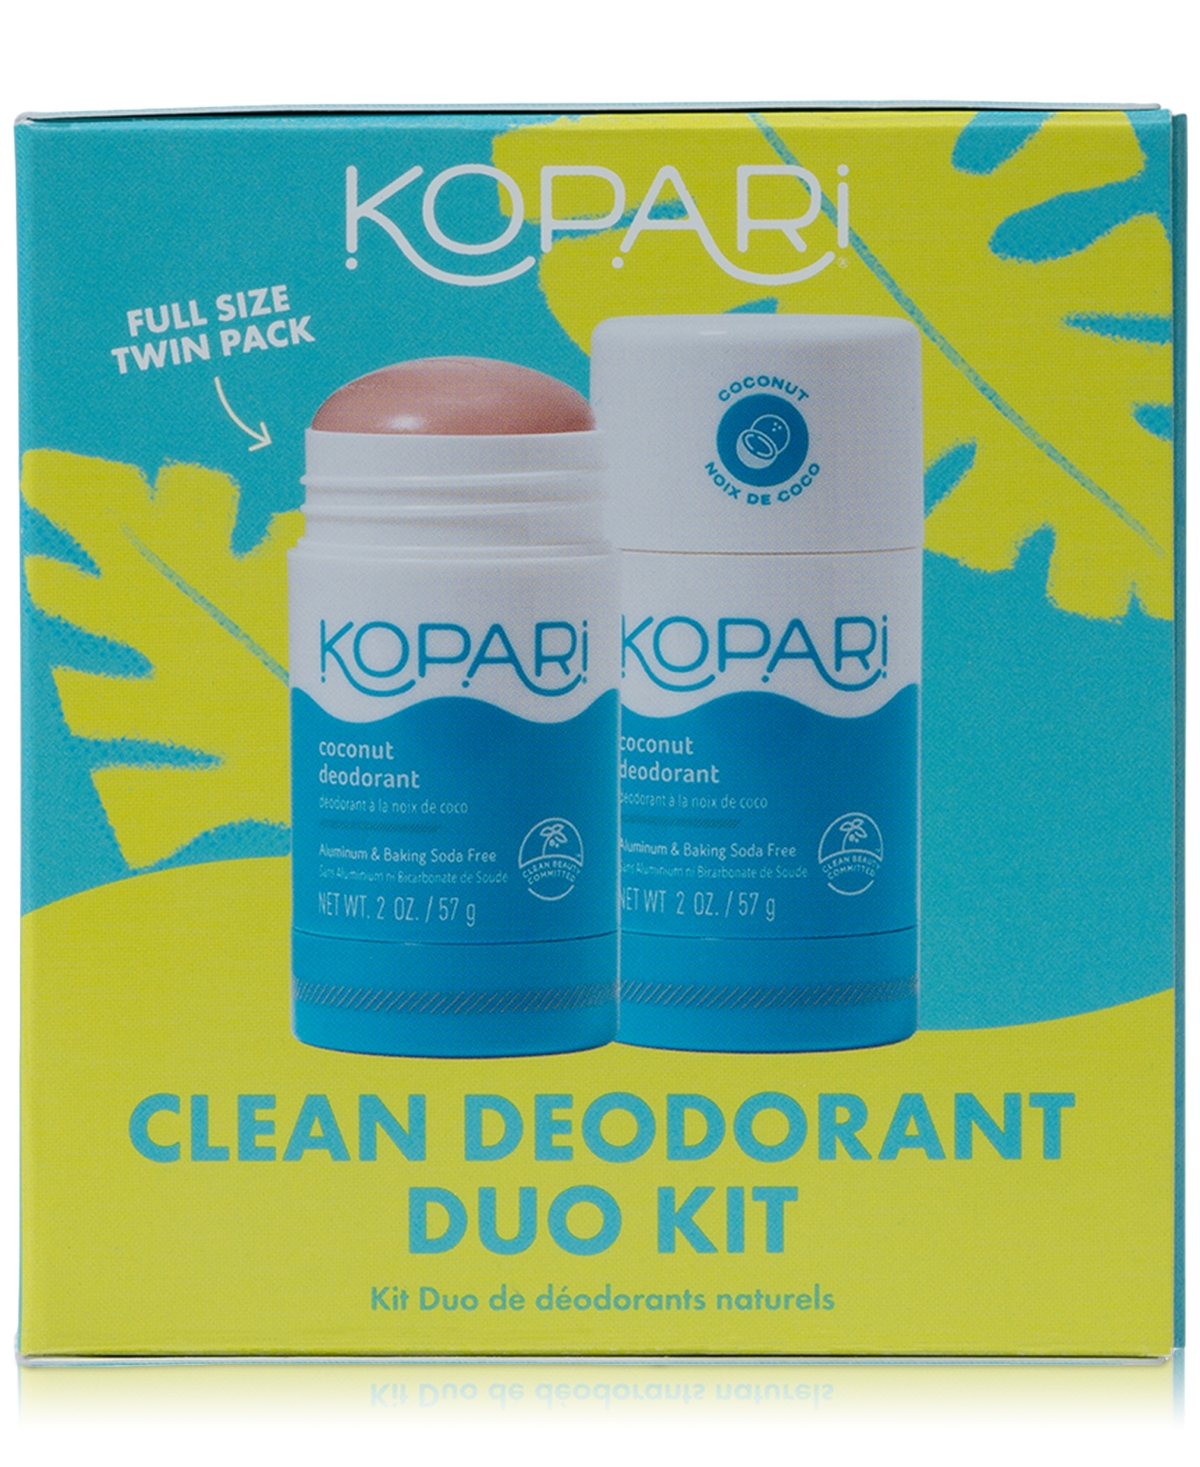 Kopari Beauty 2-pc. Clean Deodorant Set